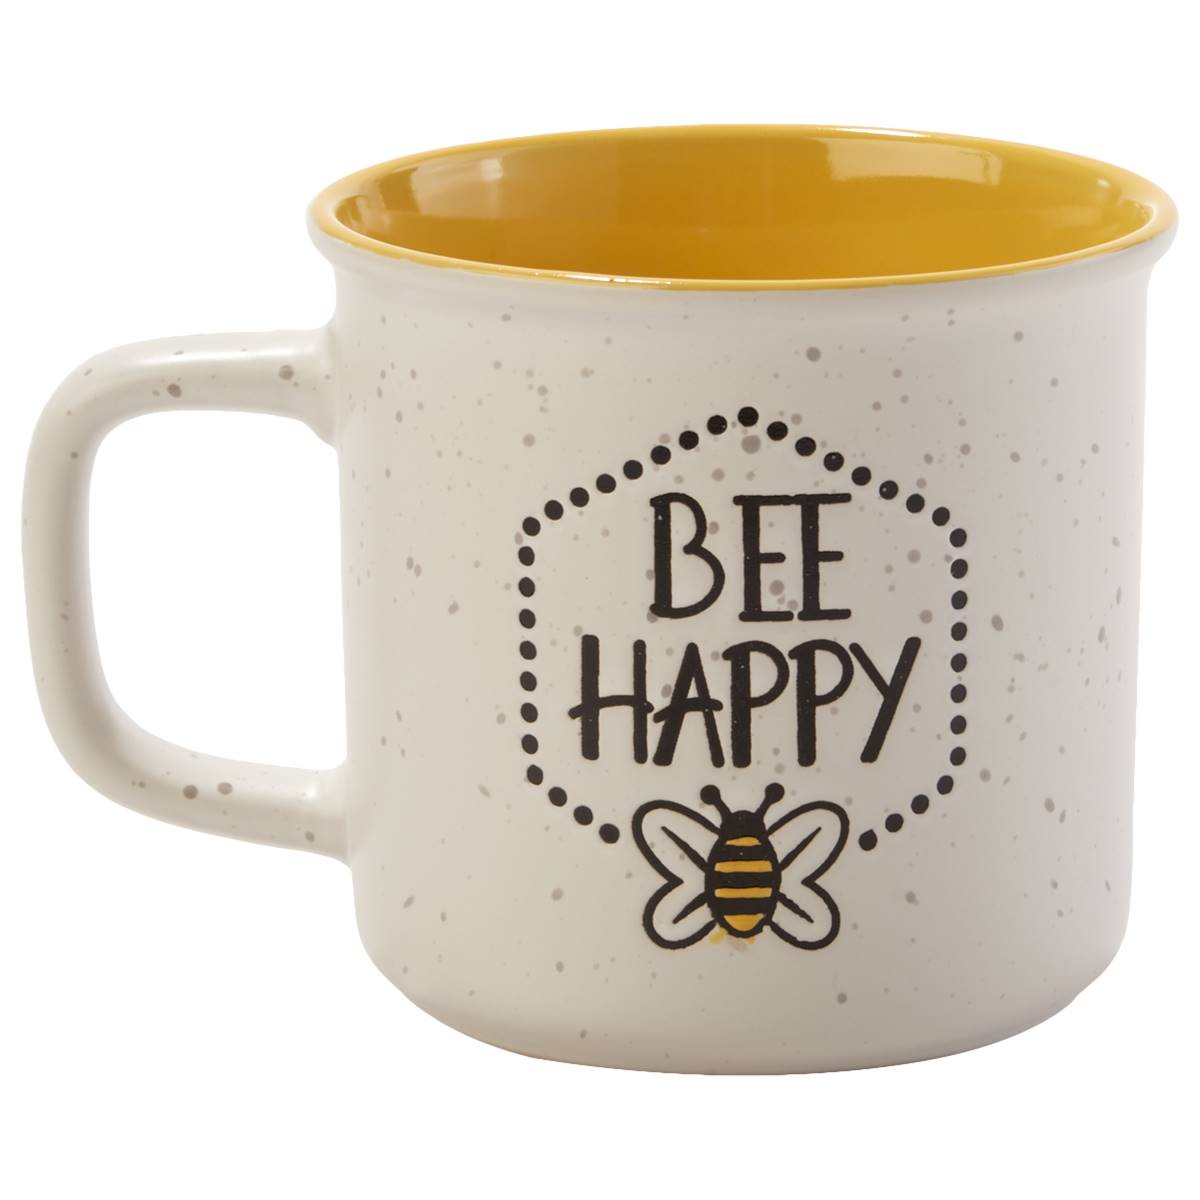 18oz. Bee Happy Mug